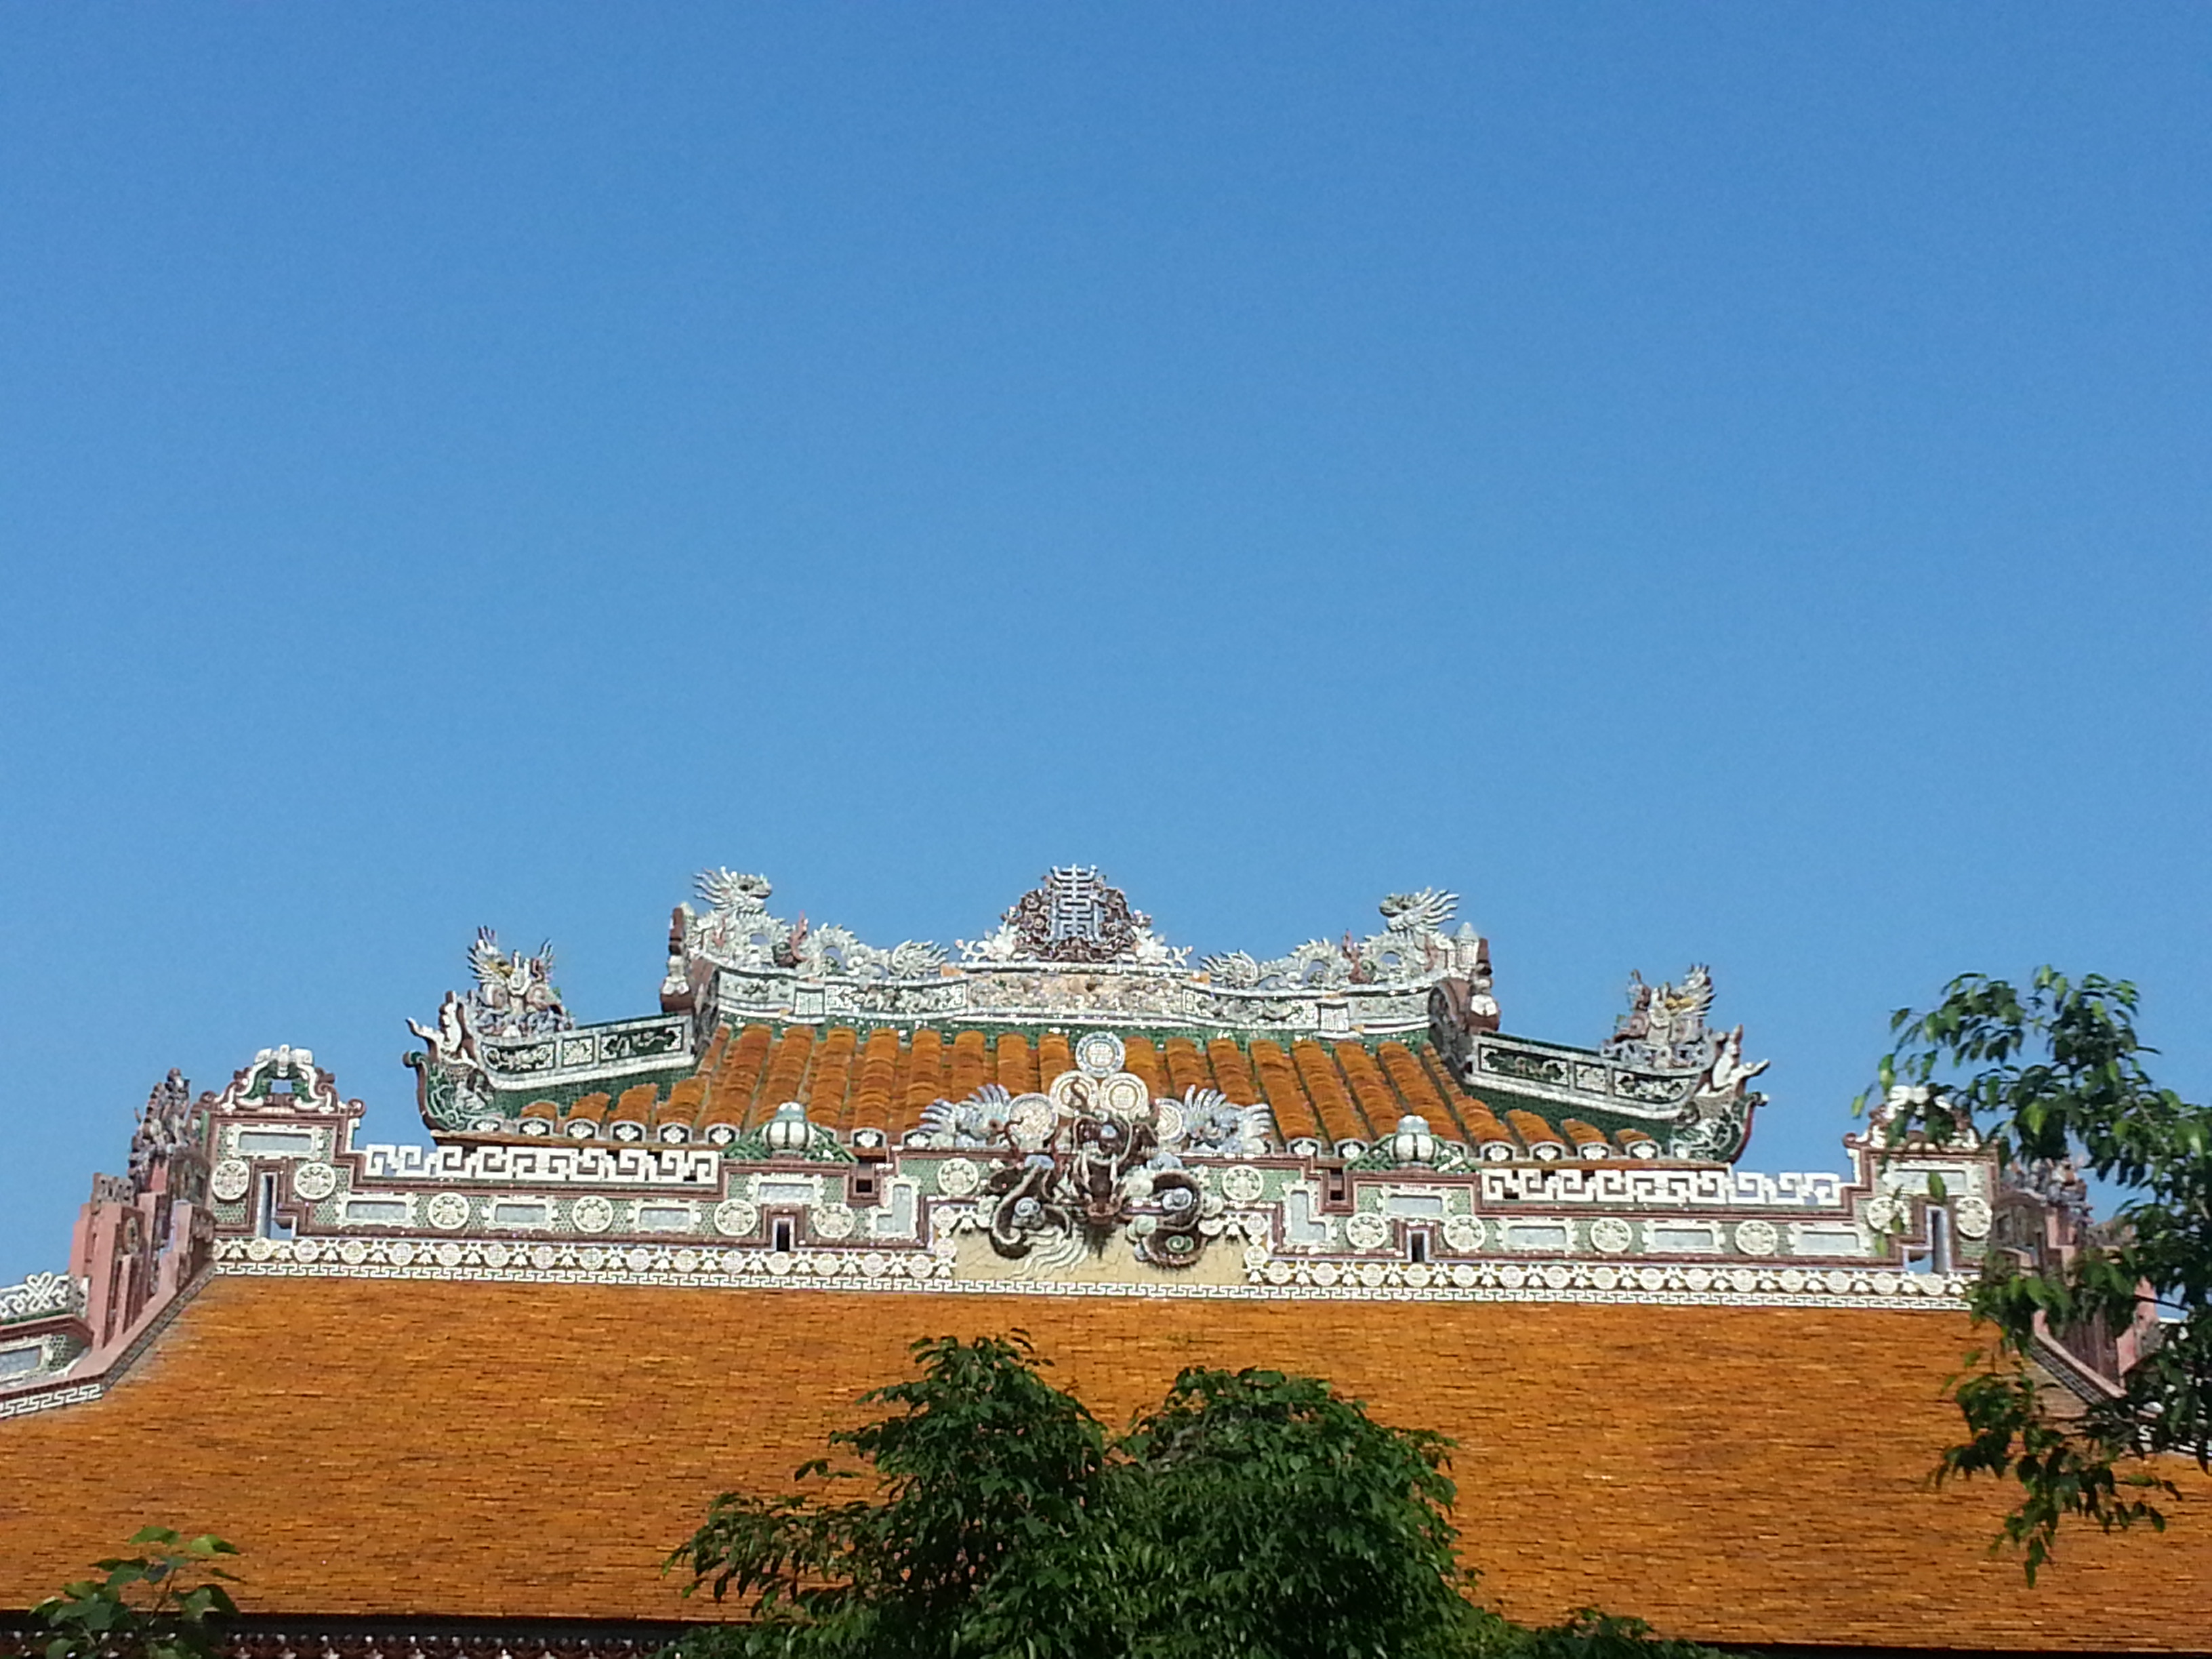 顺化皇城(hue imperial city),是阮氏王朝皇宫,也是越南现存最大且较